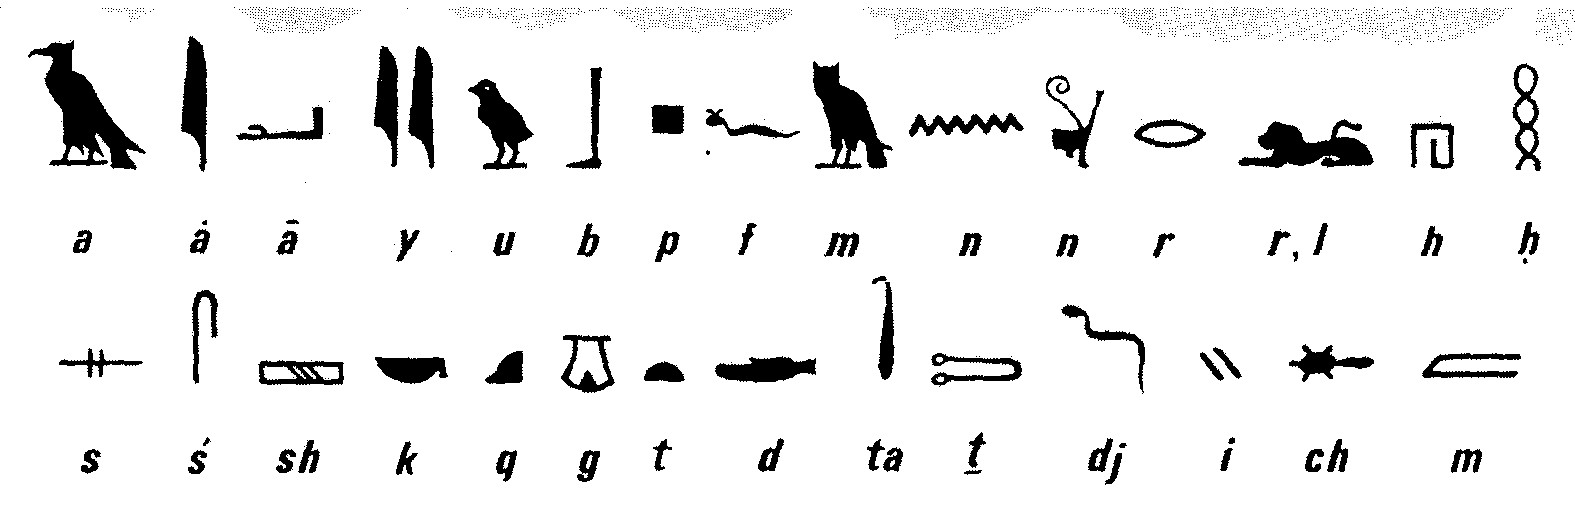 Egyptens alfabet/skaftand